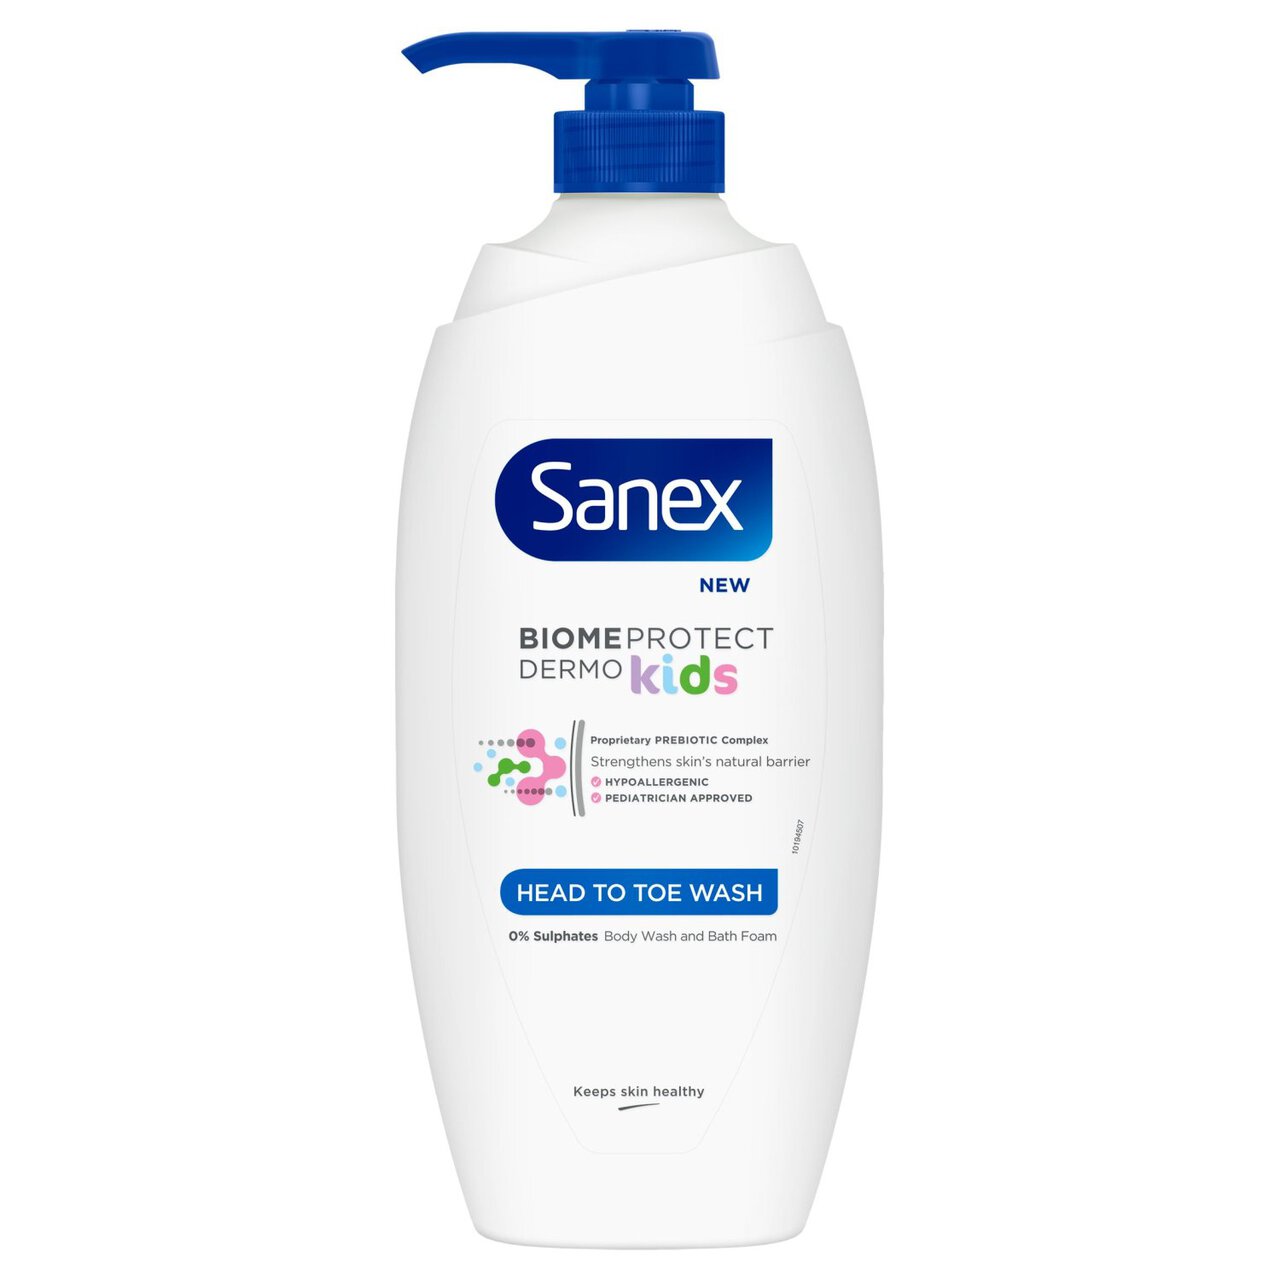 Sanex BiomeProtect Kids Head to Toe Wash 720ml